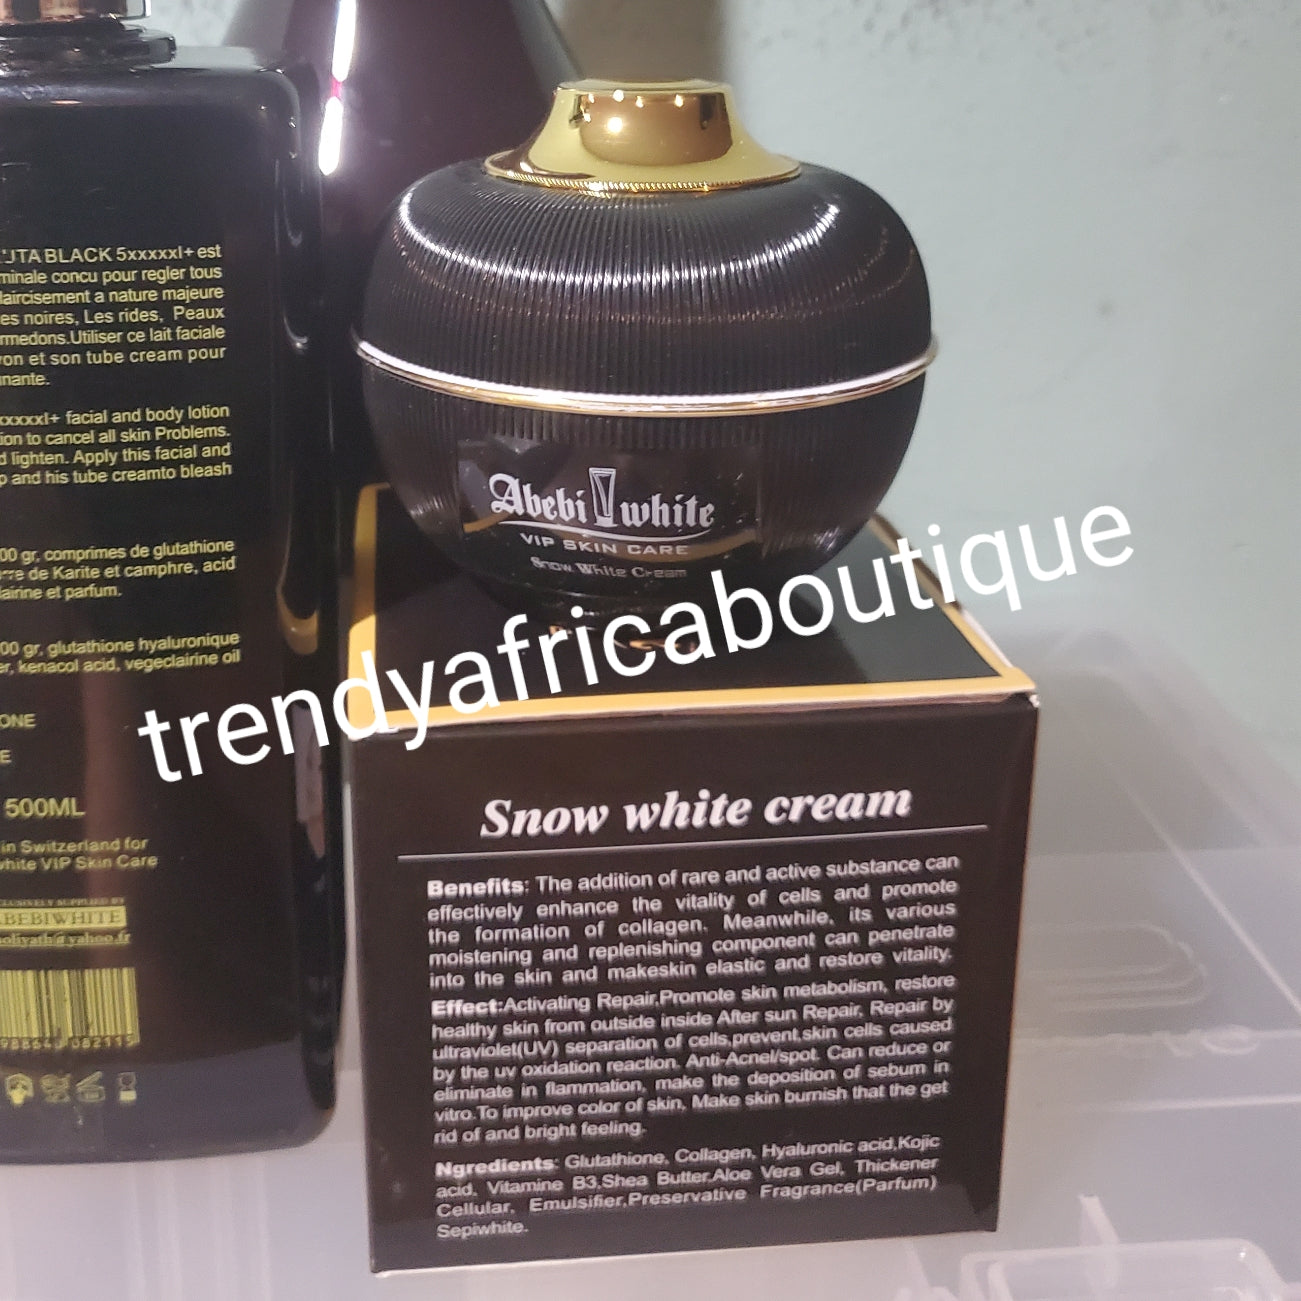 3pcs. set Latest Abebi white Gluta Black 5xxxxx + Snow white face and body lotion 500ml, Whitening Nigerian BLACK SOAPace cream, & exfoliating soap. 💯  satisfaction